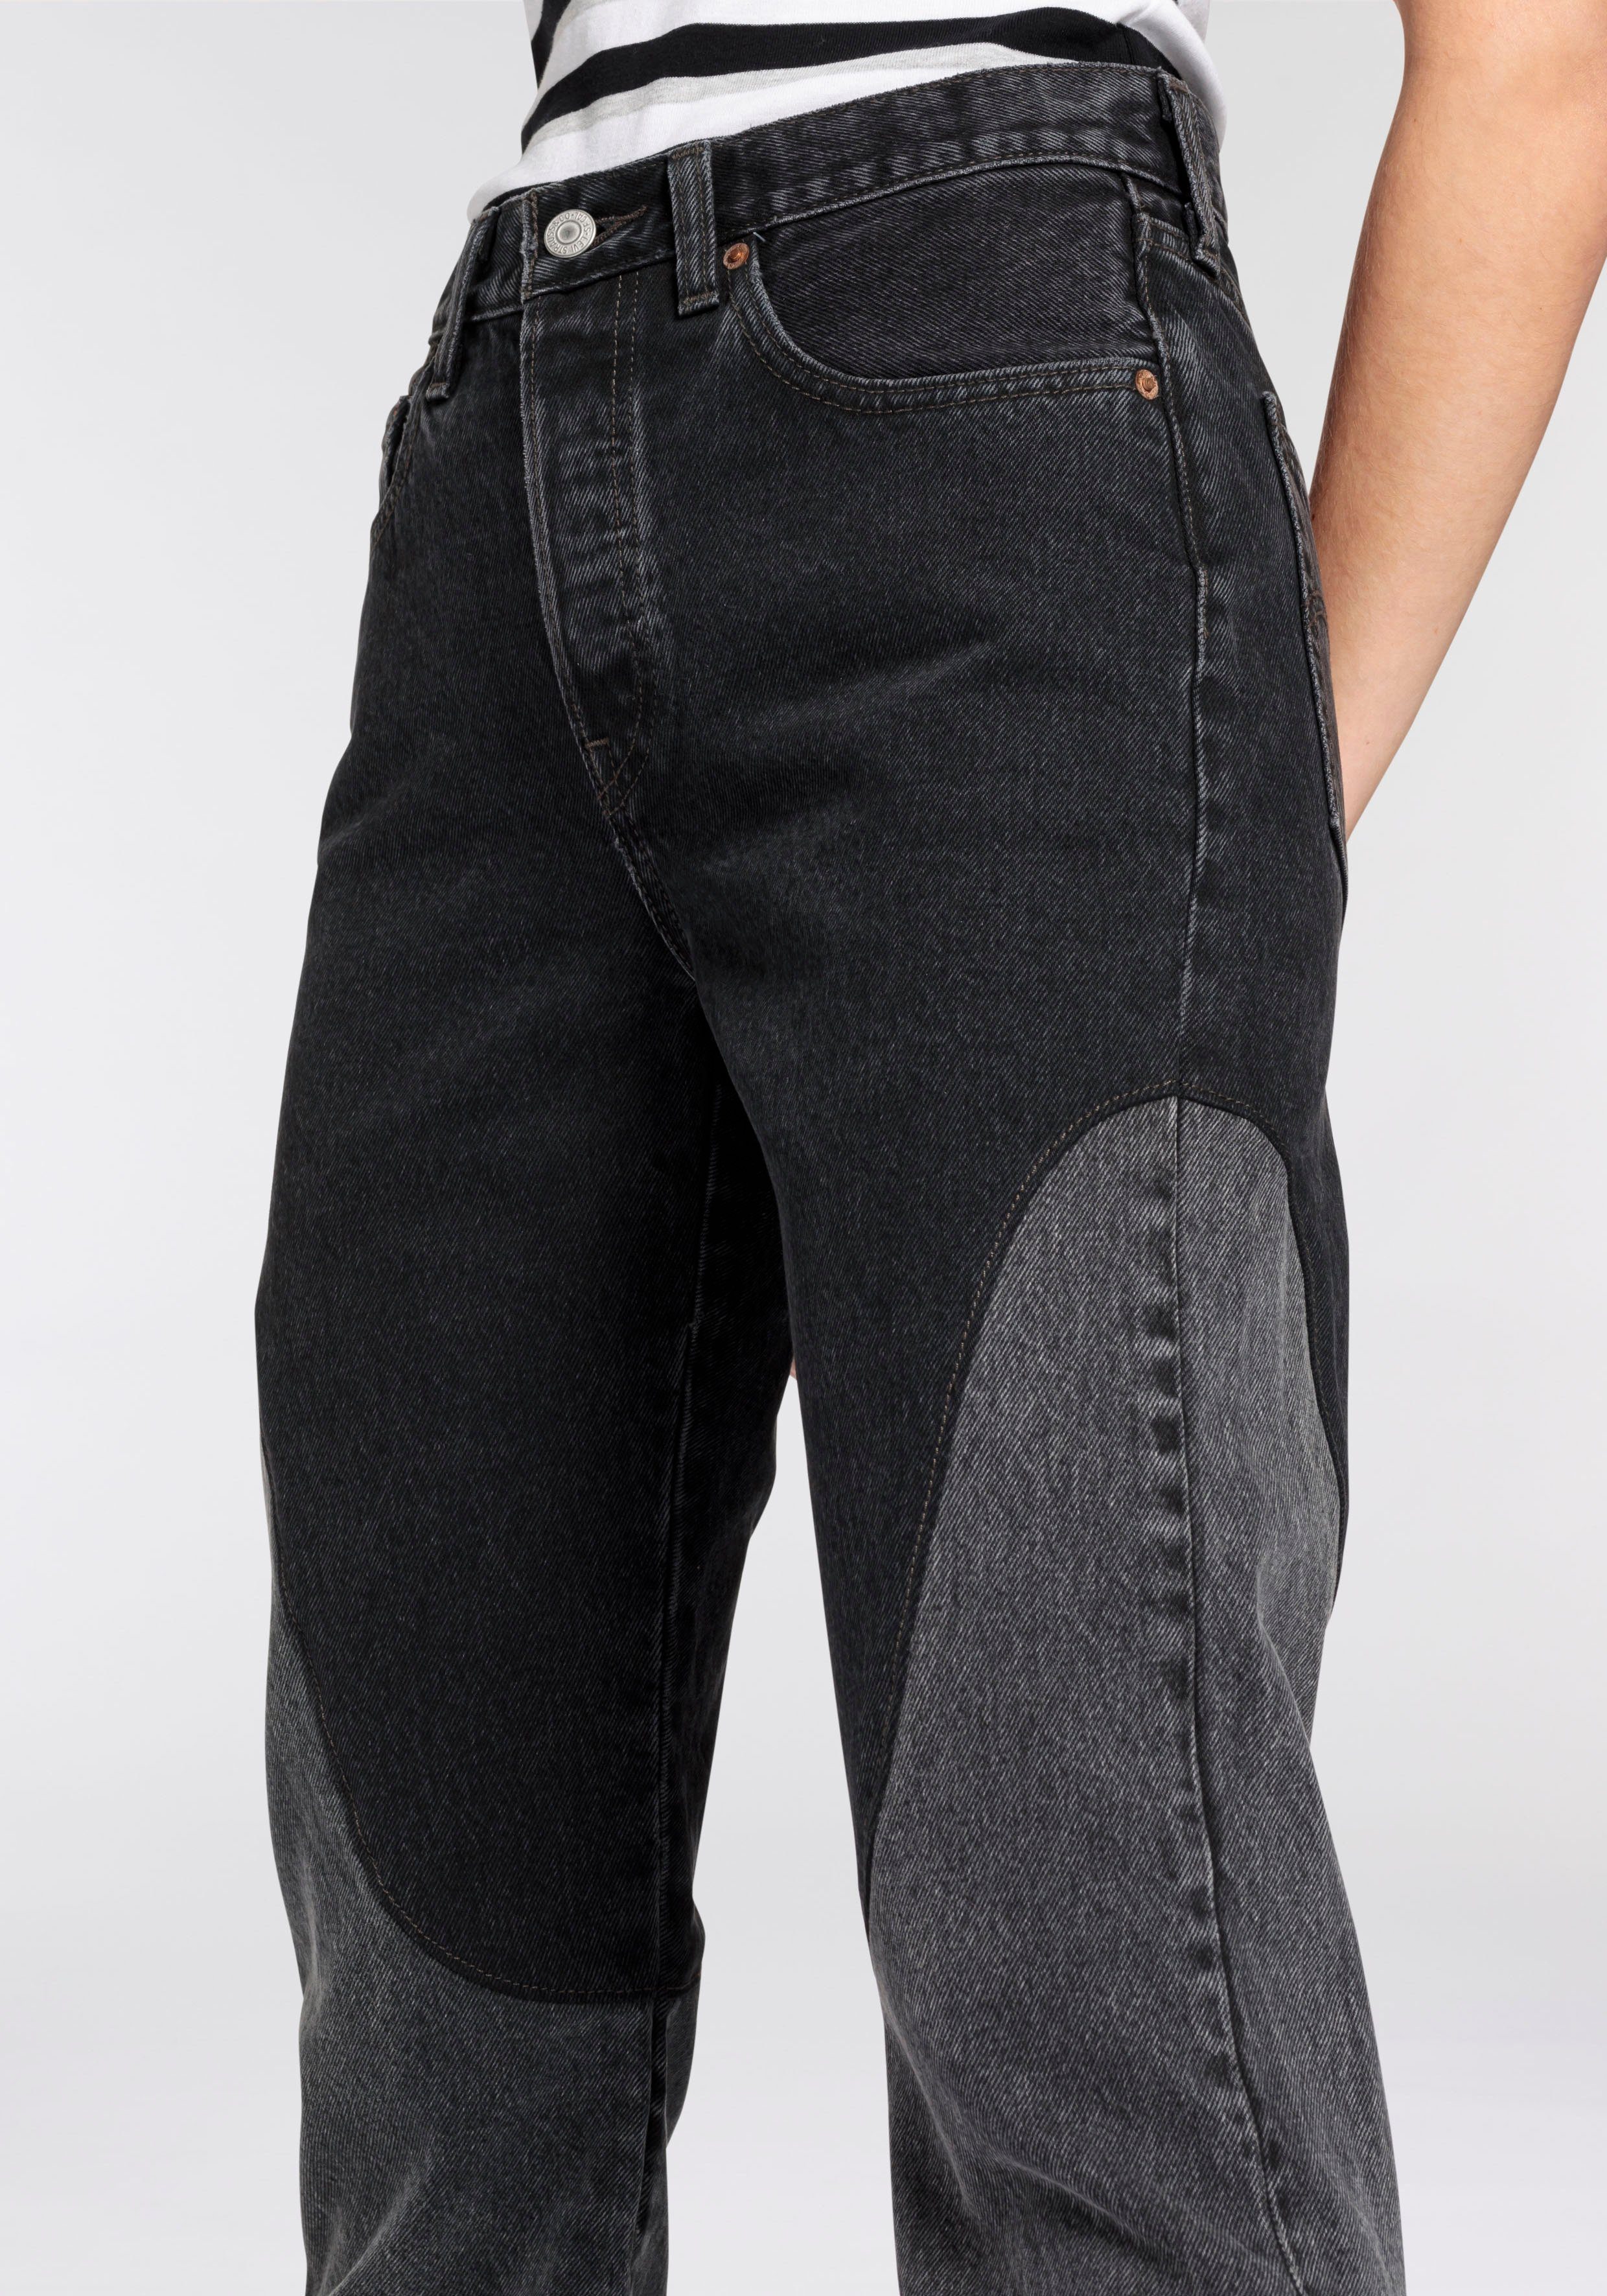 Levi's 5-pocket jeans 501 ORIGINAL CHAPS